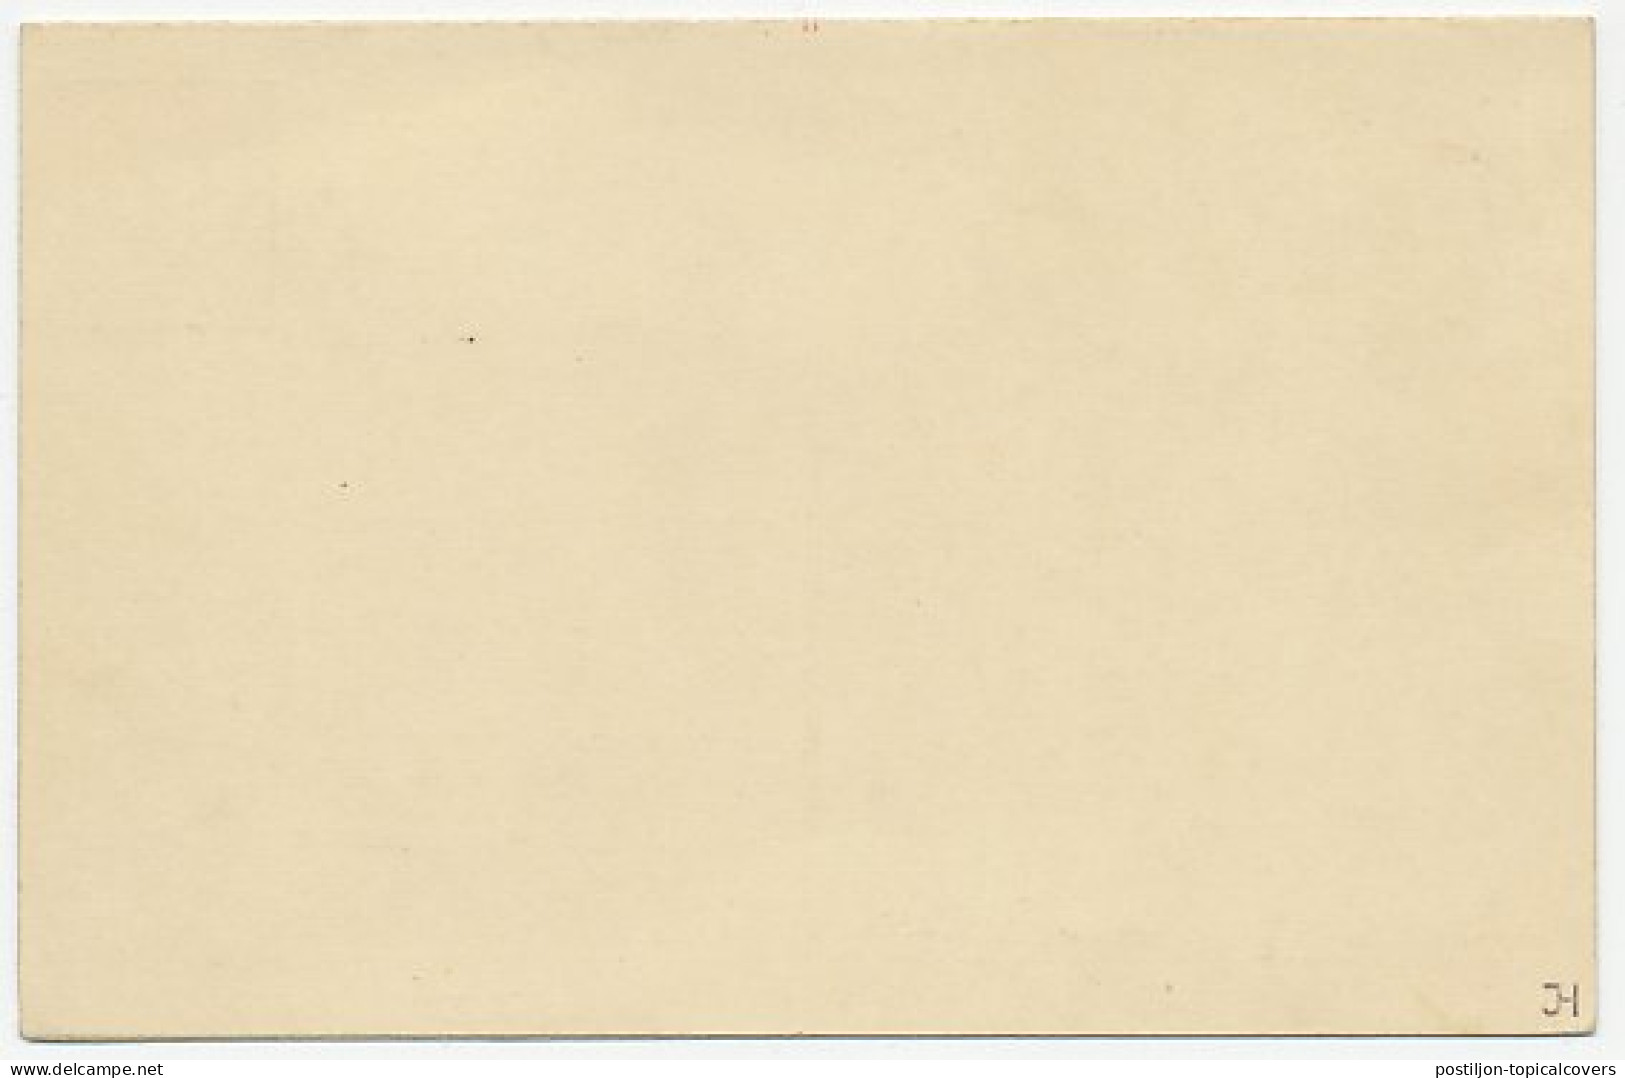 Briefkaart G. 225 - Entiers Postaux